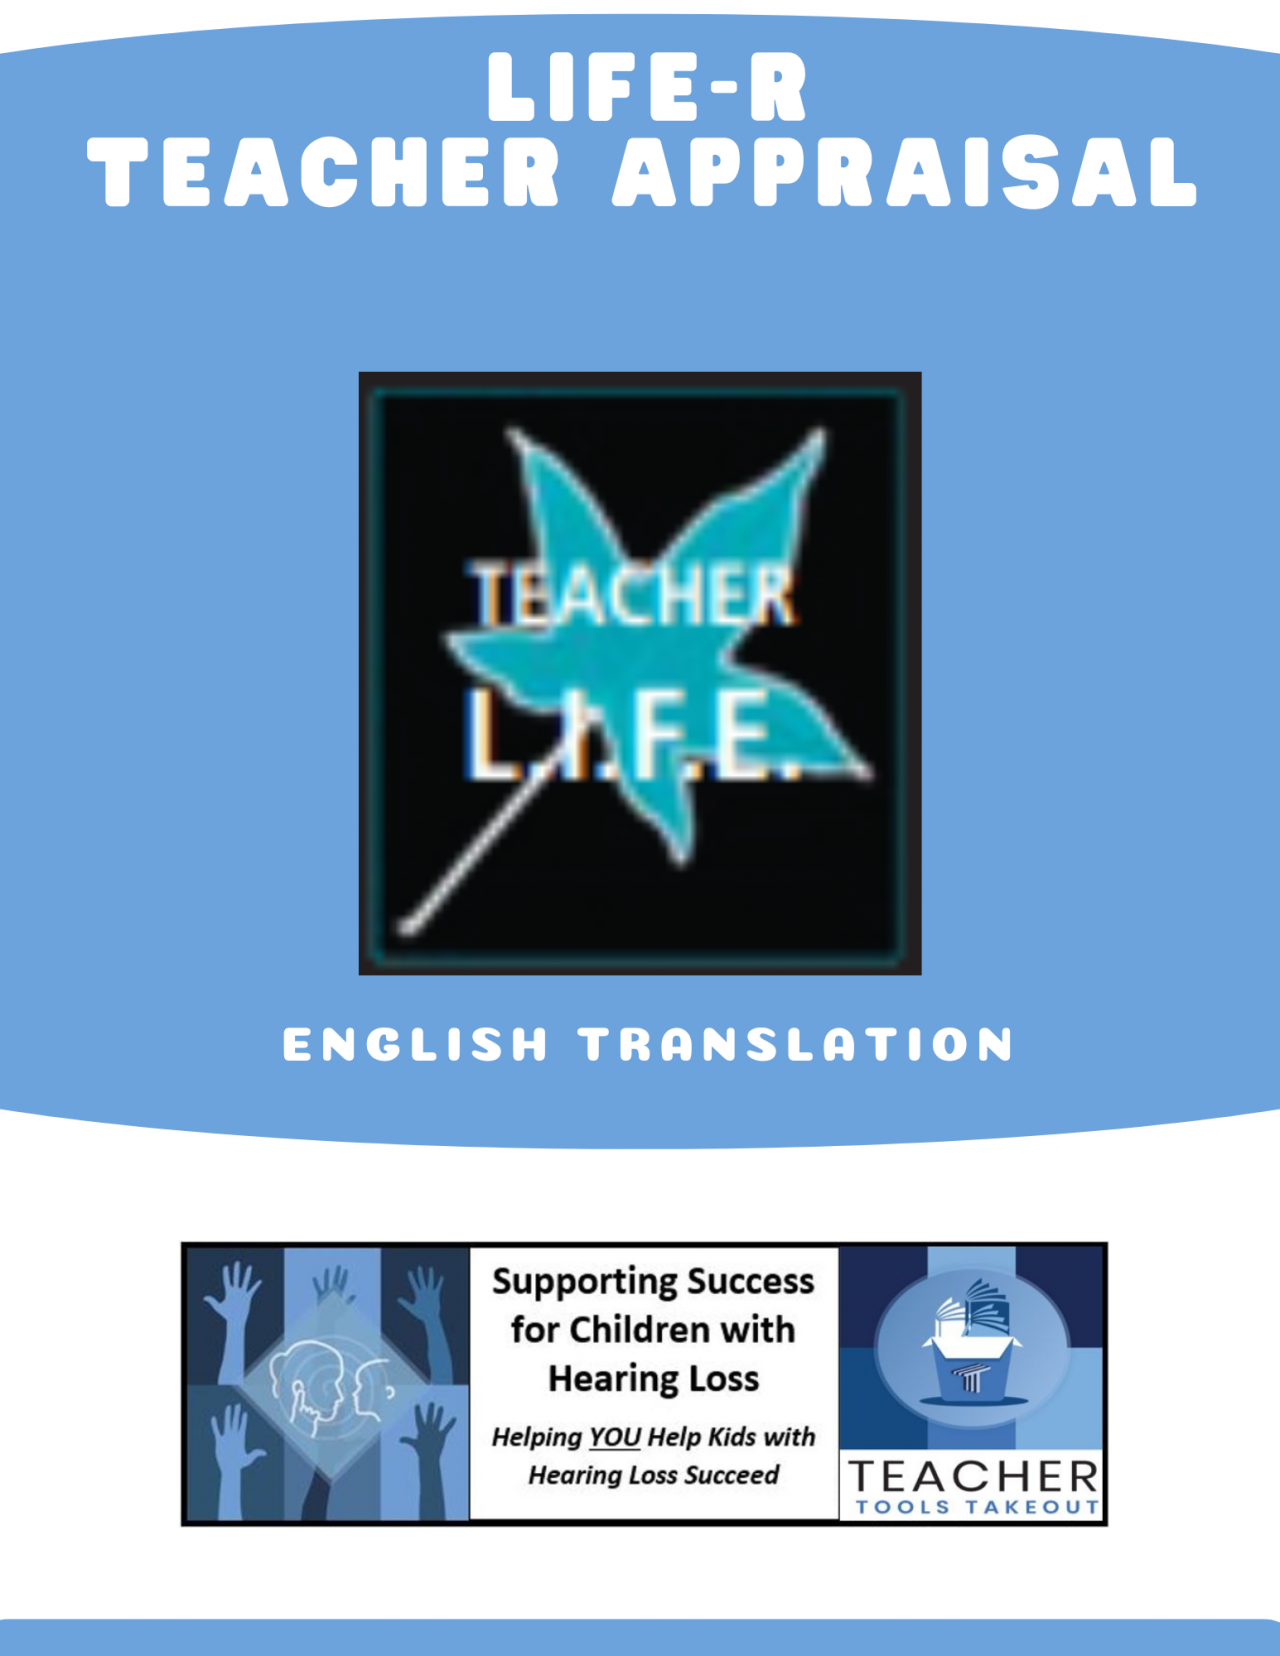 LIFE-R Teacher Appraisal